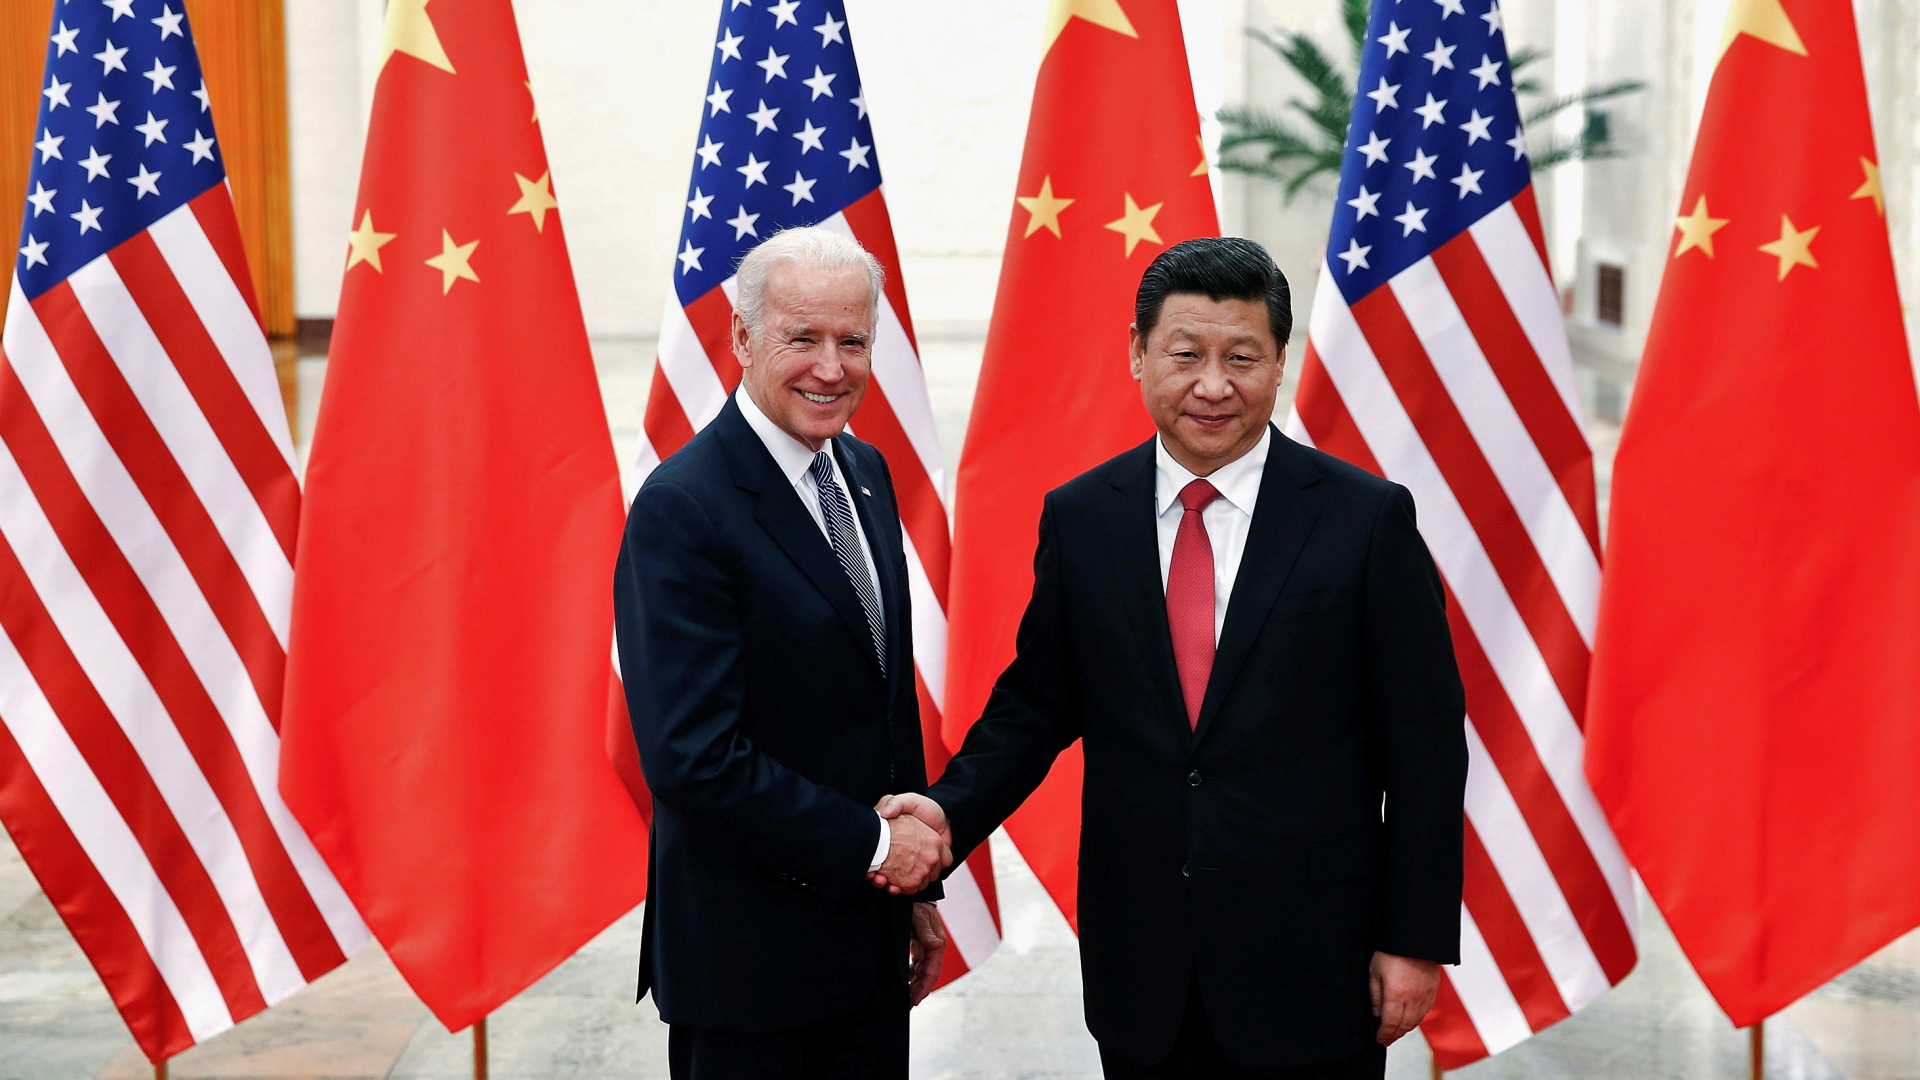 Joe Biden und Xi Jinping bei einem Treffen im Jahr 2013 | REUTERS